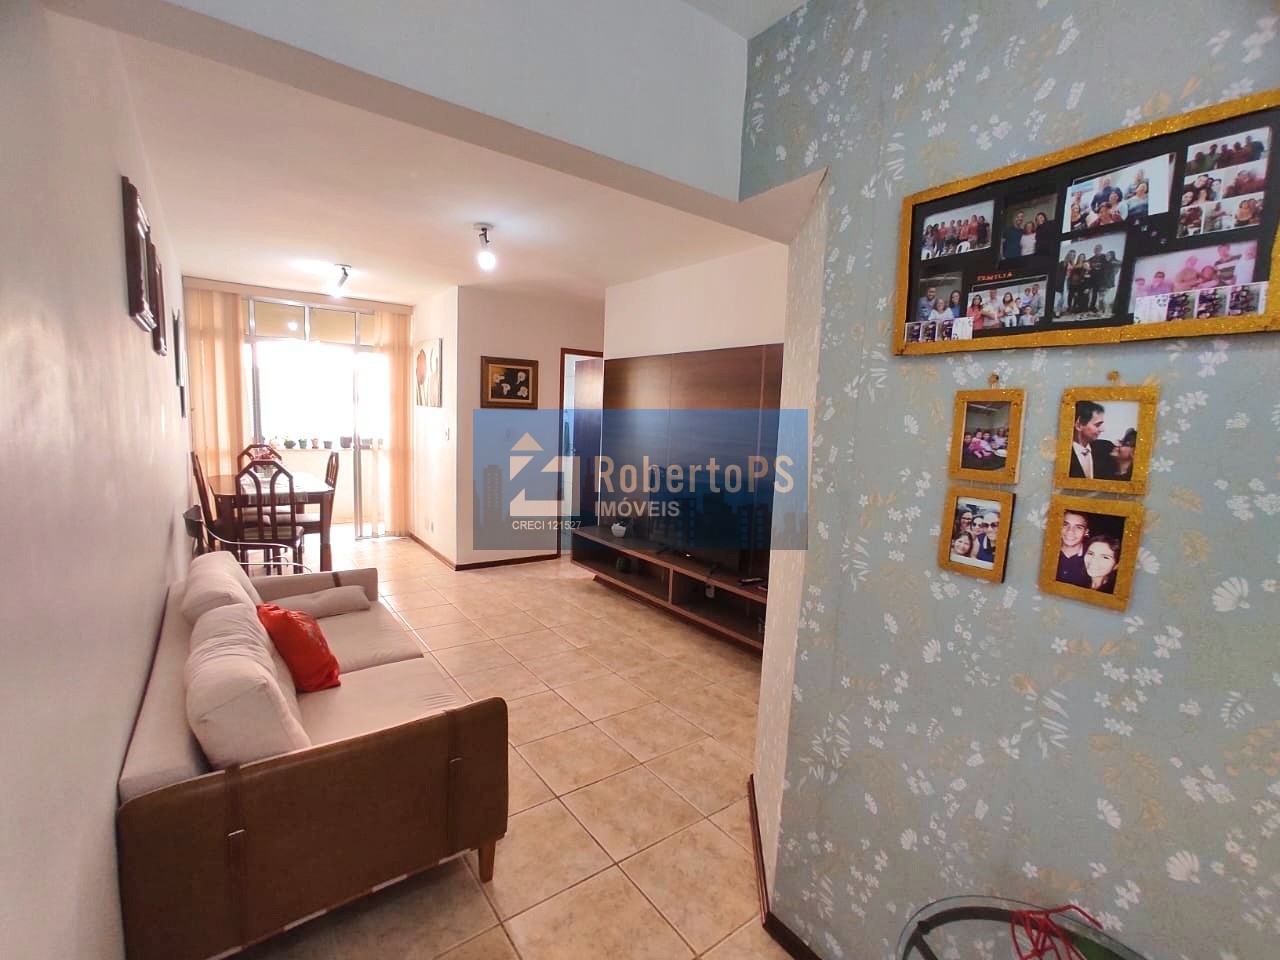 Apartamento no Residencial Adriana, 66 m2, andar baixo, 2 dormitórios com suíte para venda R$370.000, Palmeiras de São José - São José dos Campos-SP